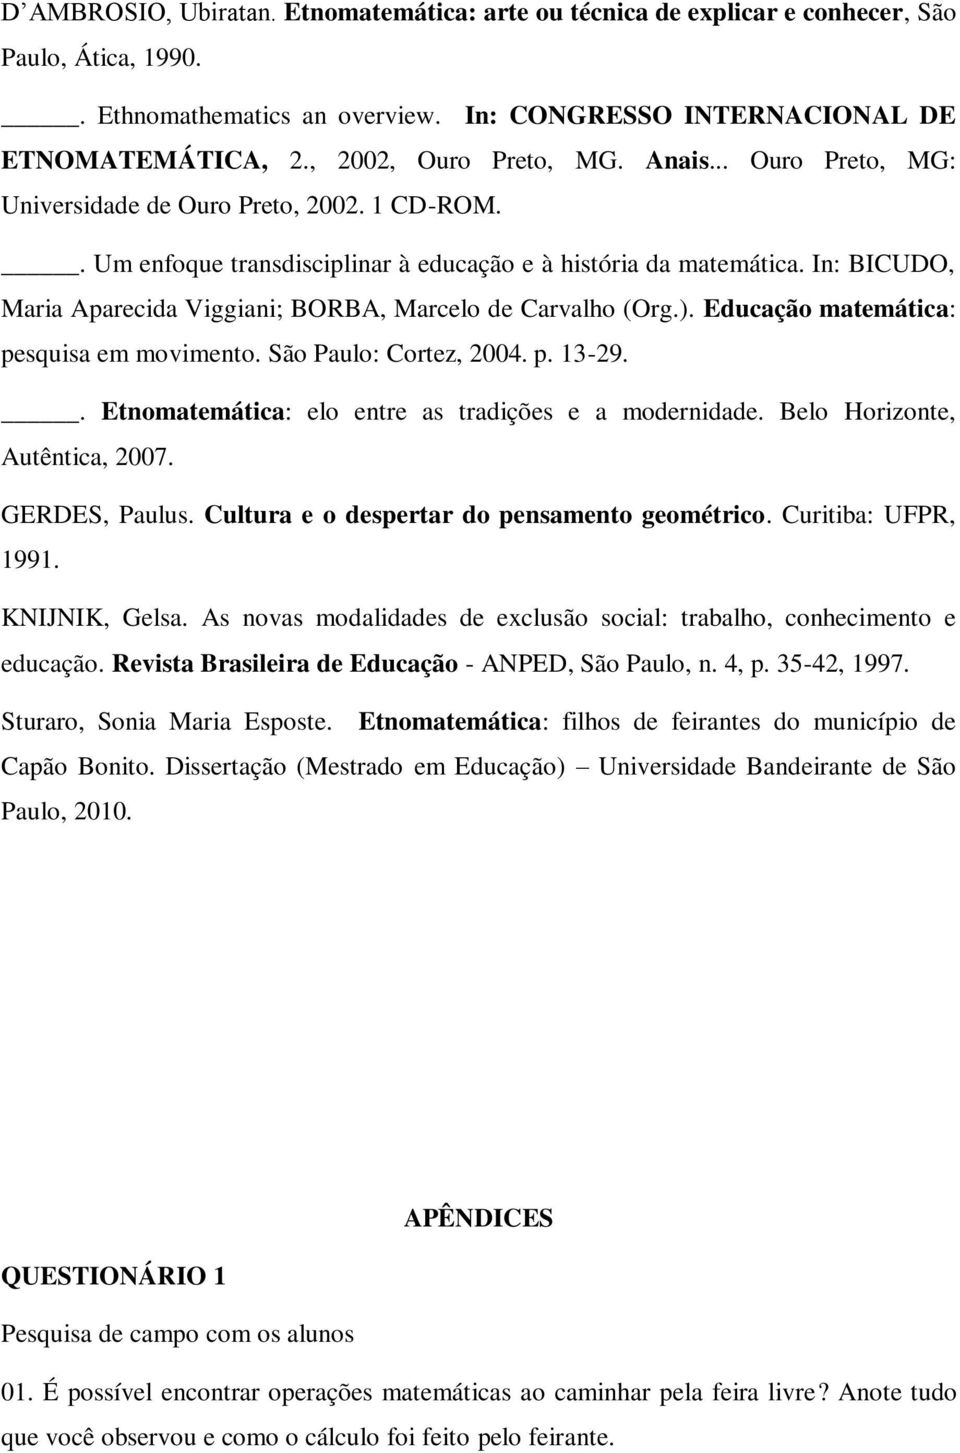 In: BICUDO, Maria Aparecida Viggiani; BORBA, Marcelo de Carvalho (Org.). Educação matemática: pesquisa em movimento. São Paulo: Cortez, 2004. p. 13-29.